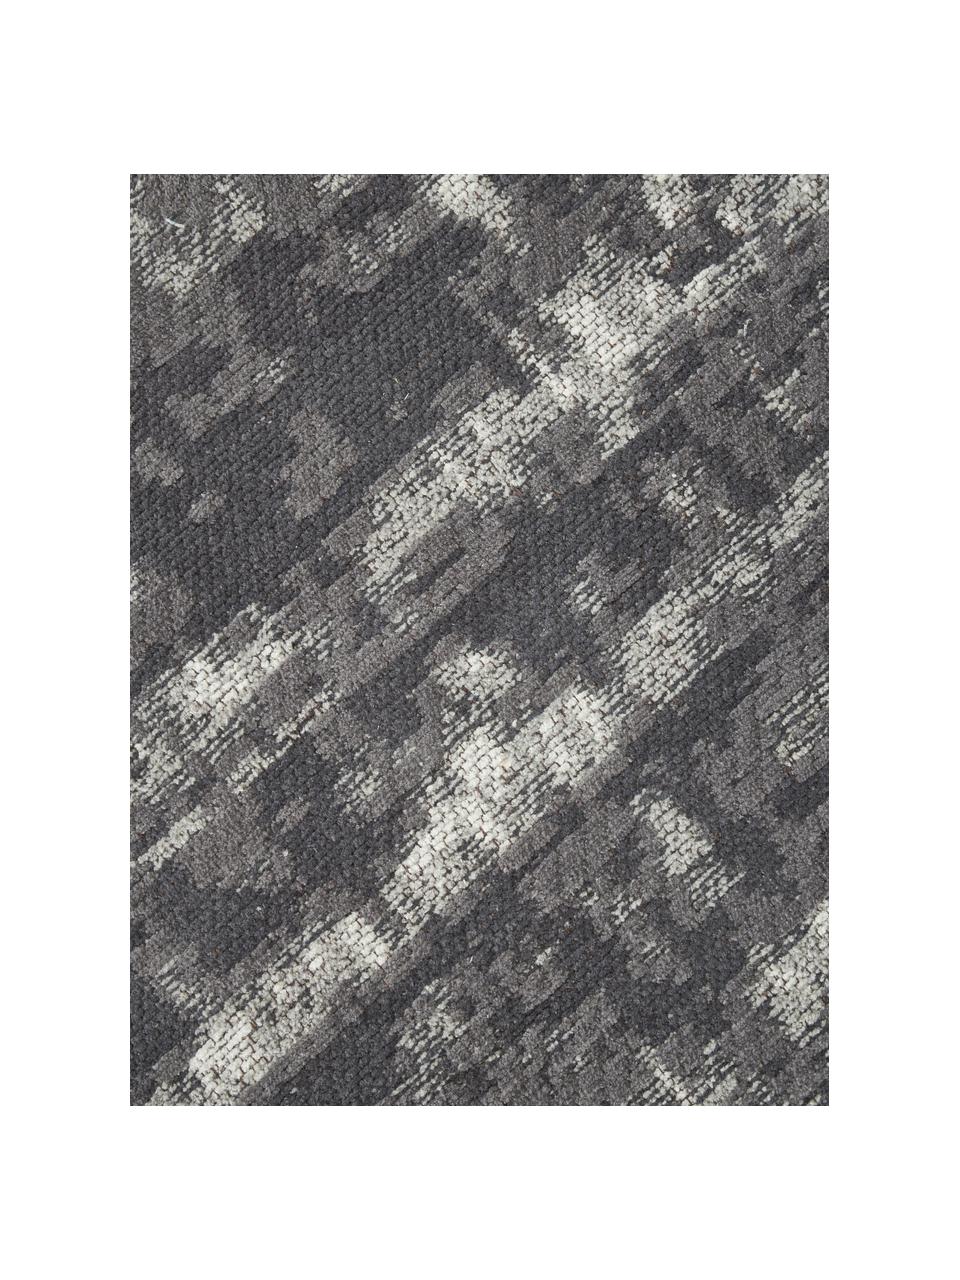 Kulatý ručně tkaný bavlněný koberec ve vintage stylu Luise, Odstíny šedé a bílé, Ø 120 cm (velikost S)